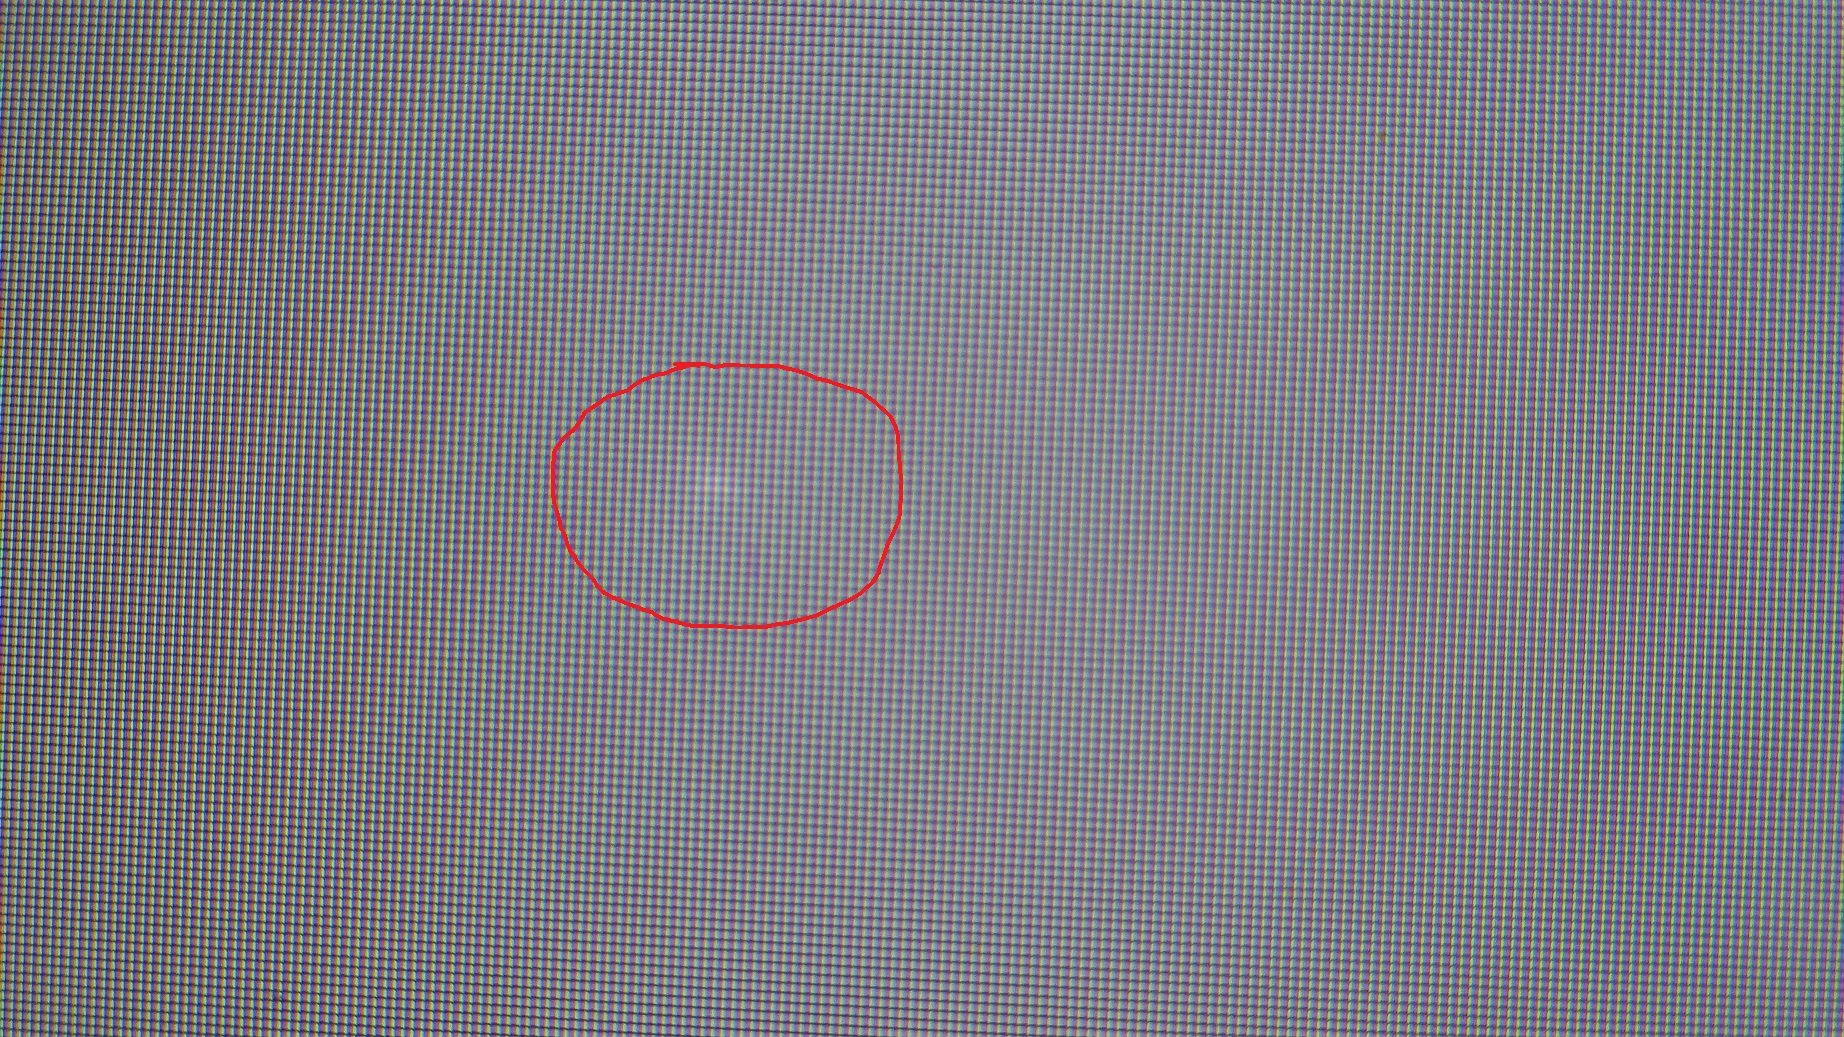 Далеко видно кругом прозрачна. Белые точки н амониторн. Белое пятно на экране. Маленькая точка на экране. Темные пиксели на мониторе.